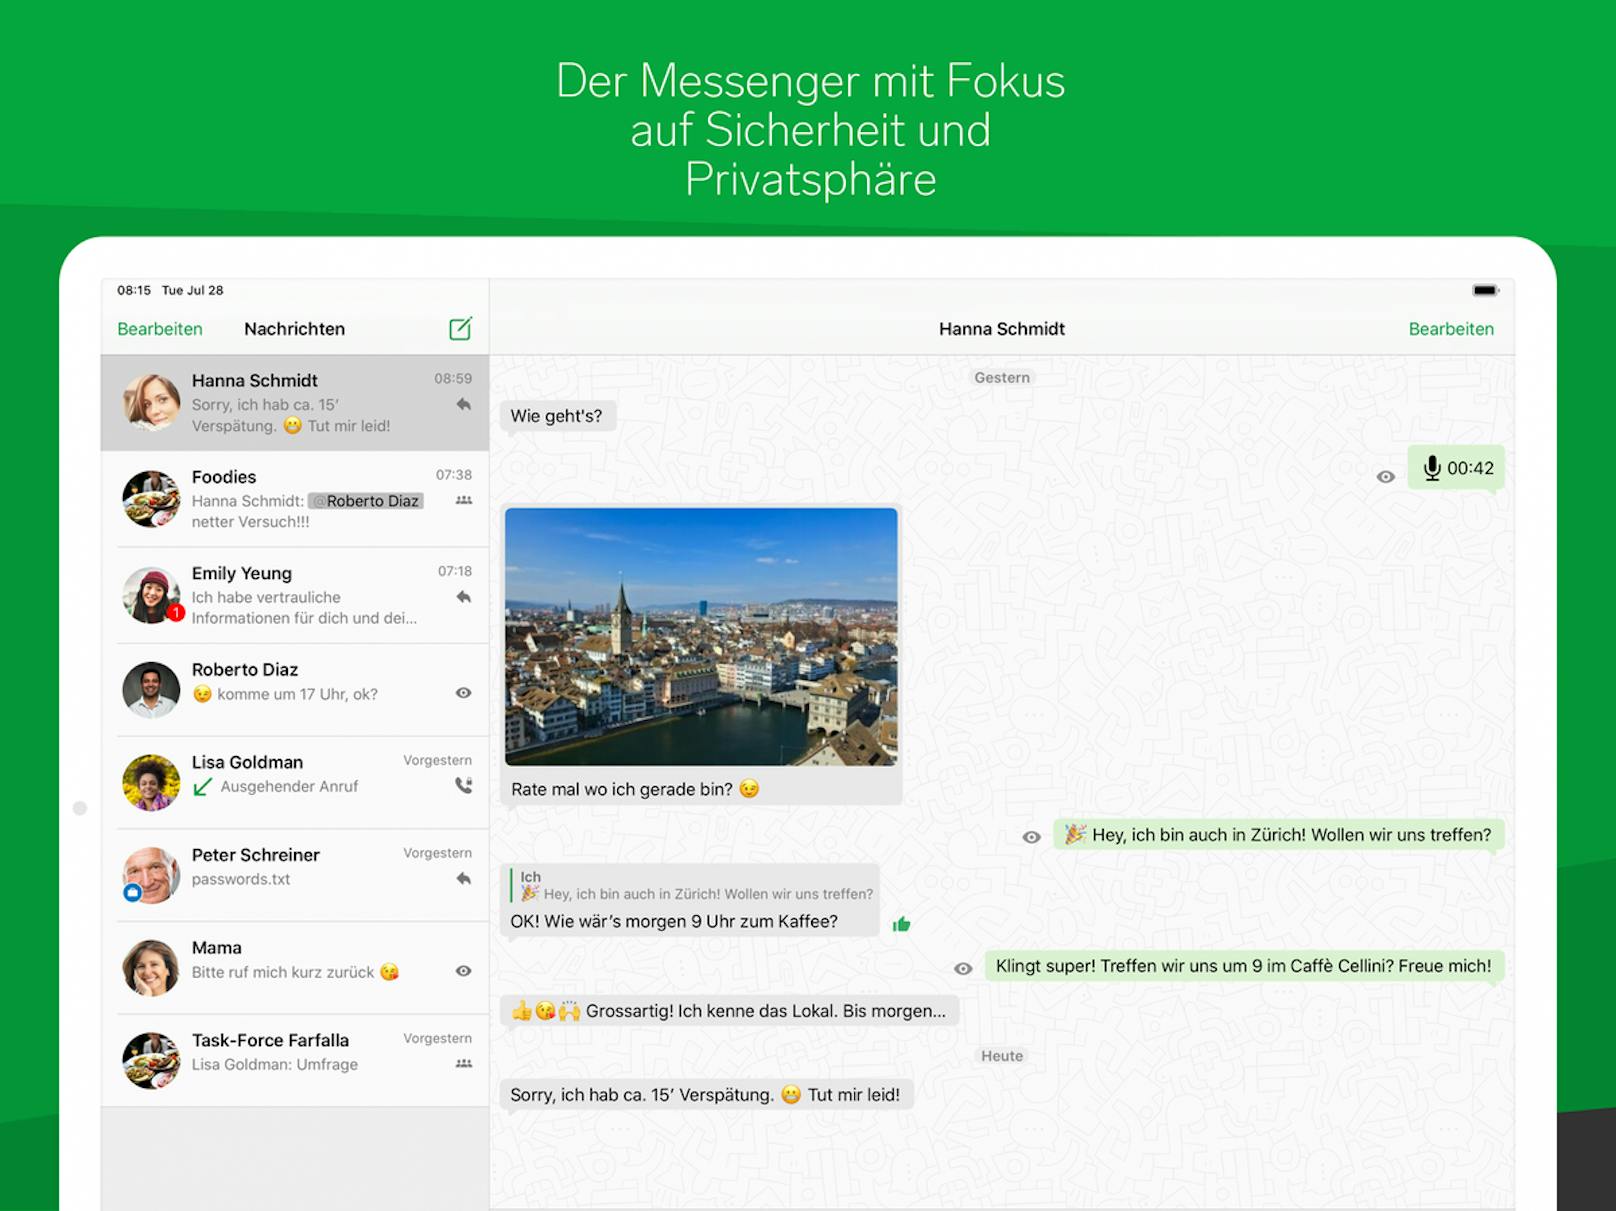 Die Schweizer App, die viele ähnliche Funktionen wie WhatsApp bietet, hat eine Verfünffachung in den Download-Zahlen beobachten können.